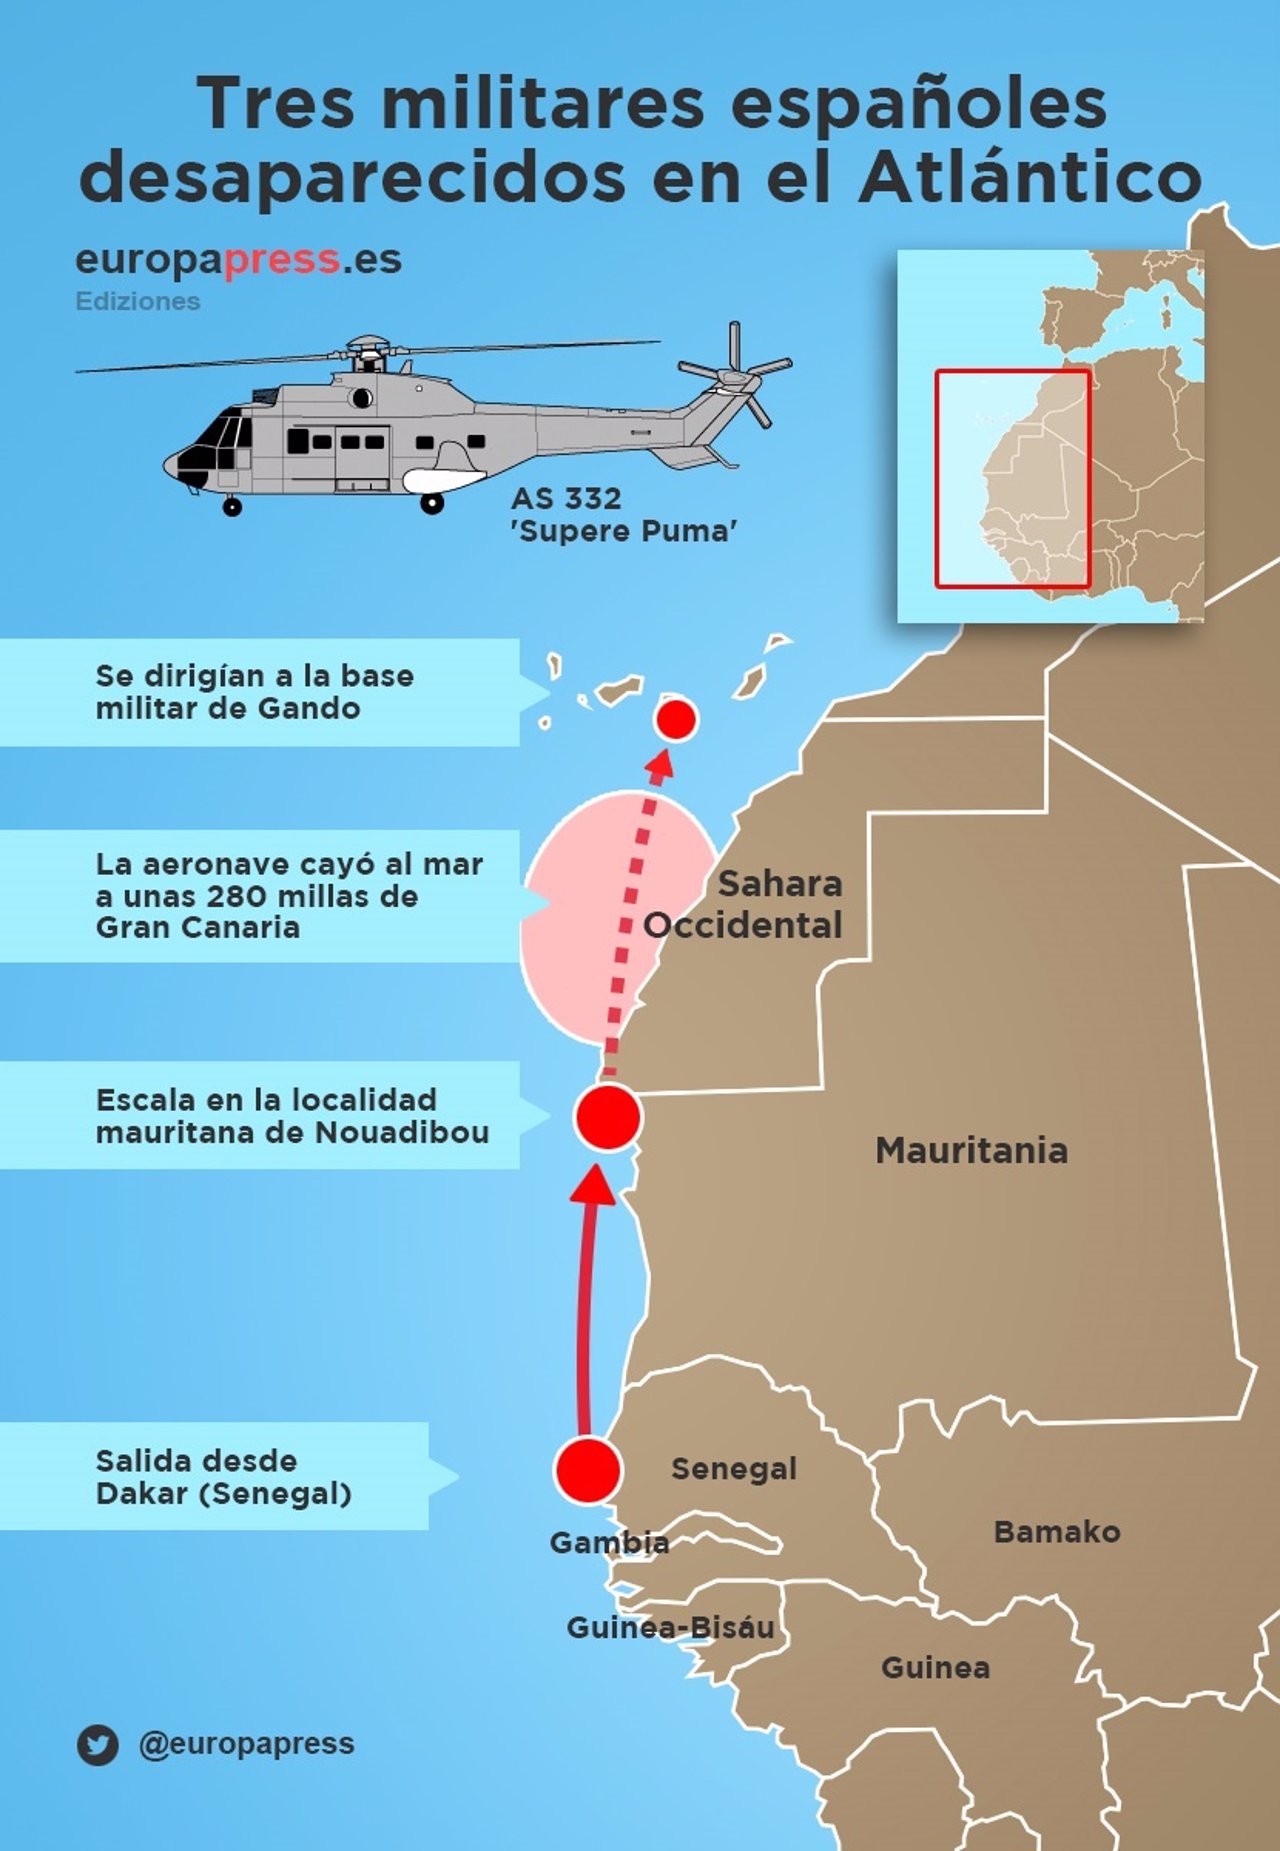 Accidente helicóptero, militares desaparecidos en aguas del Atlántico Canarias